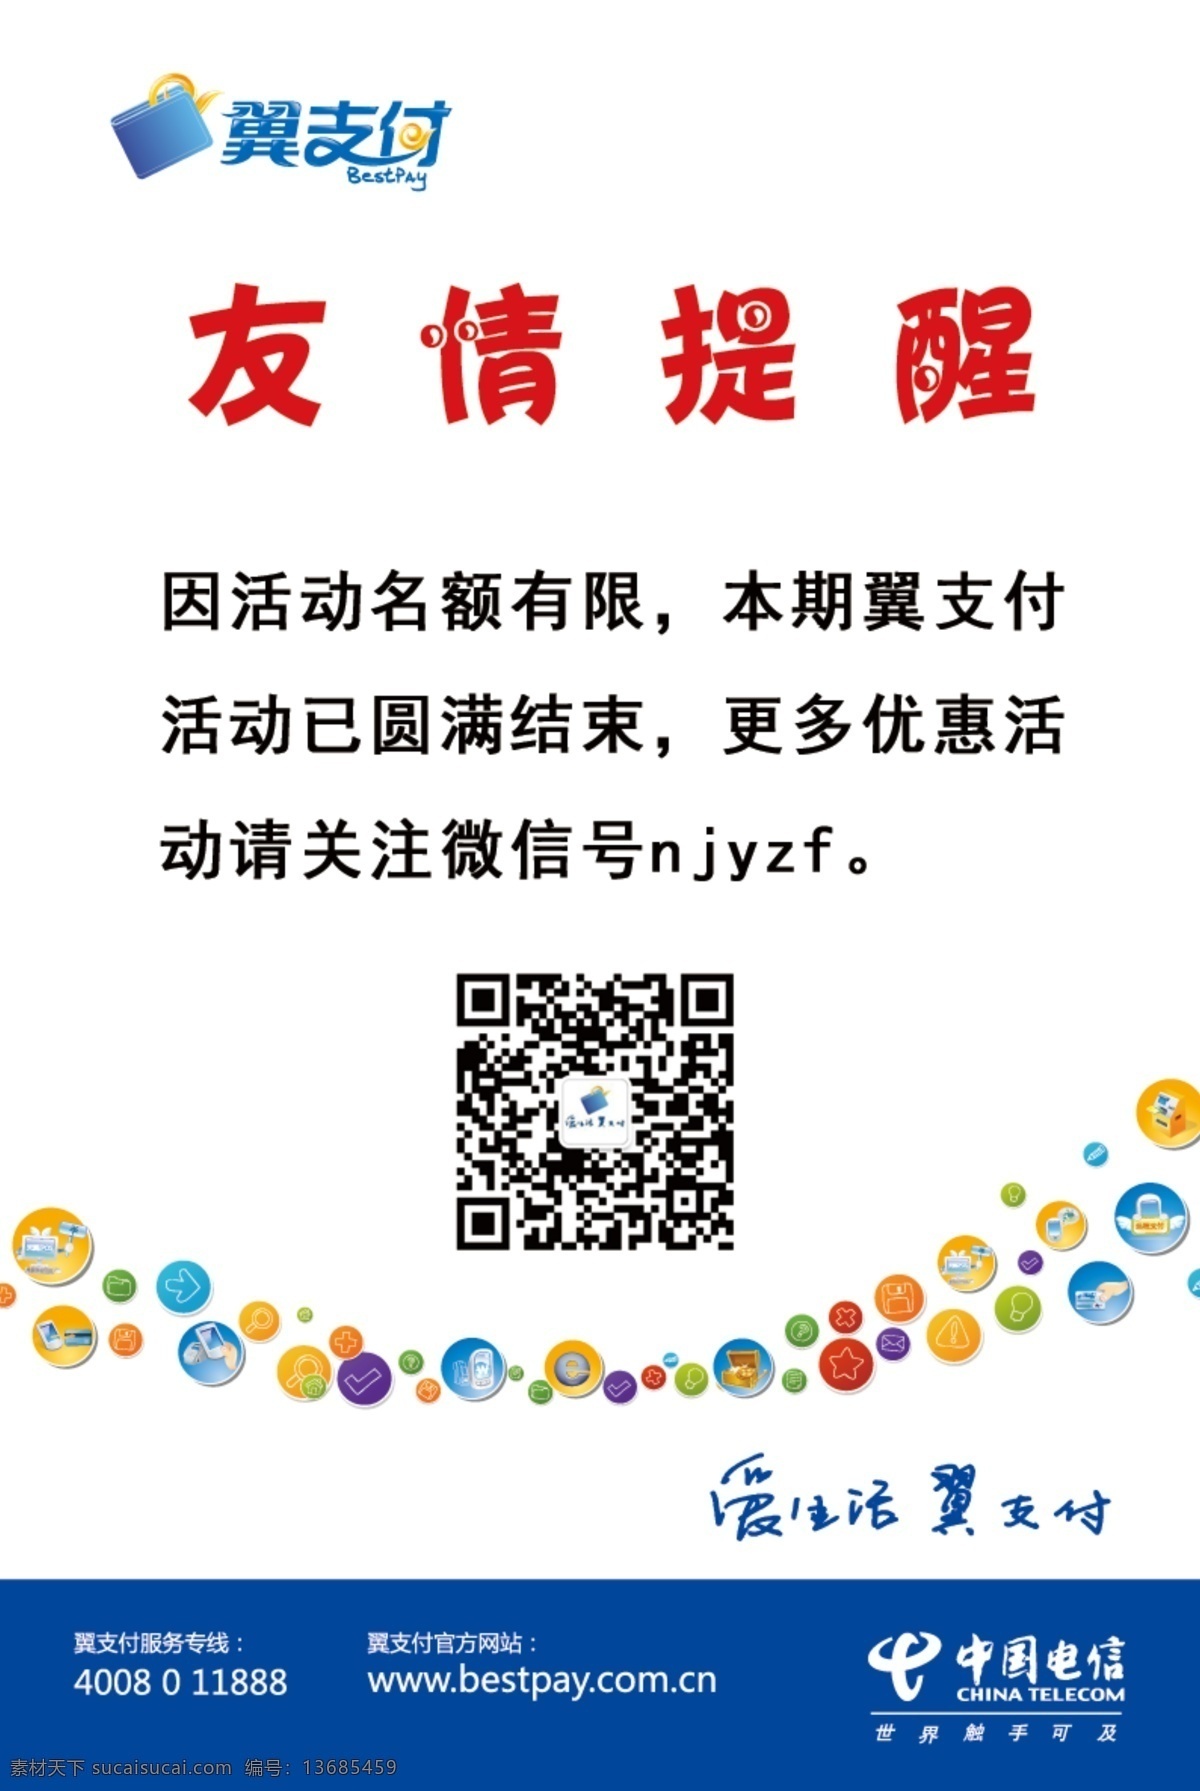 电信 台卡 天翼 招贴设计 中国电信 电信台卡 友情提醒 爱生活翼支付 海报 其他海报设计